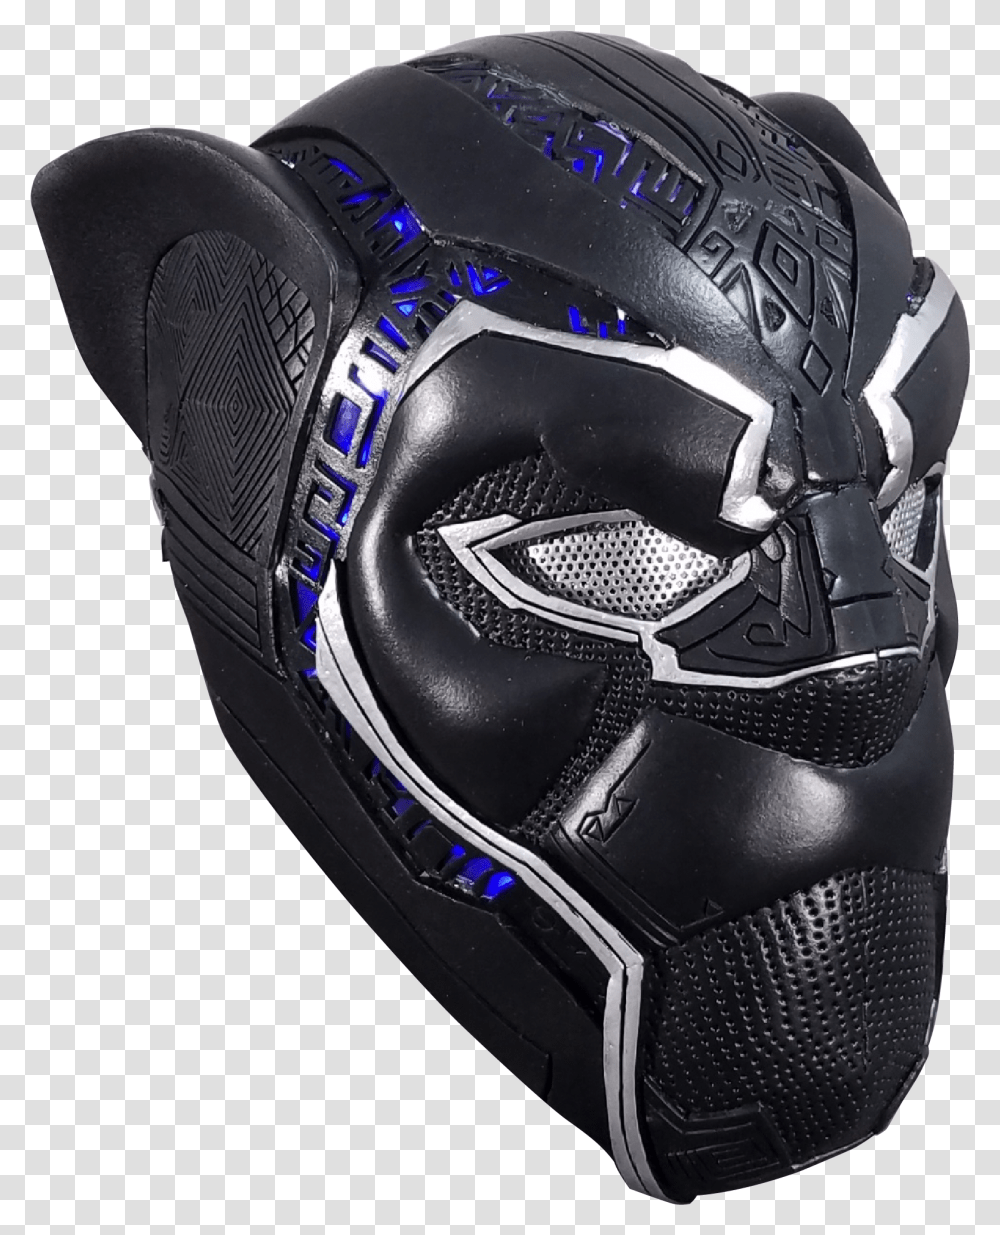 Black Panther Helmet Black Panther Helmet Pattern, Apparel, Crash Helmet, Footwear Transparent Png